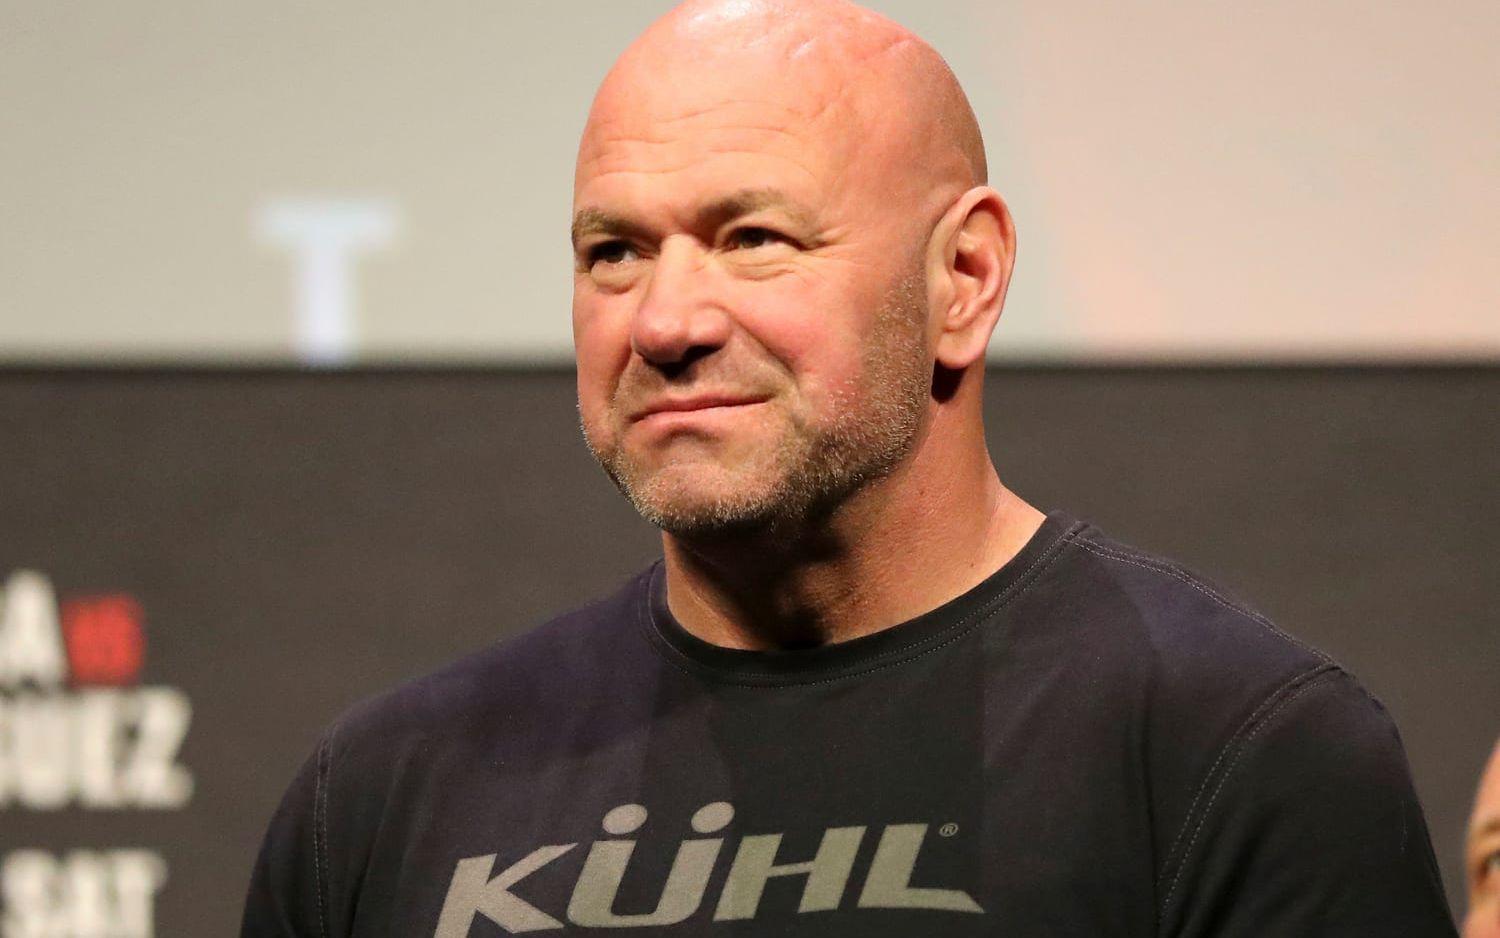 ”Det känns inte som den smartaste idén här i världen”, säger UFC-presidenten Dana White om det inträffade.